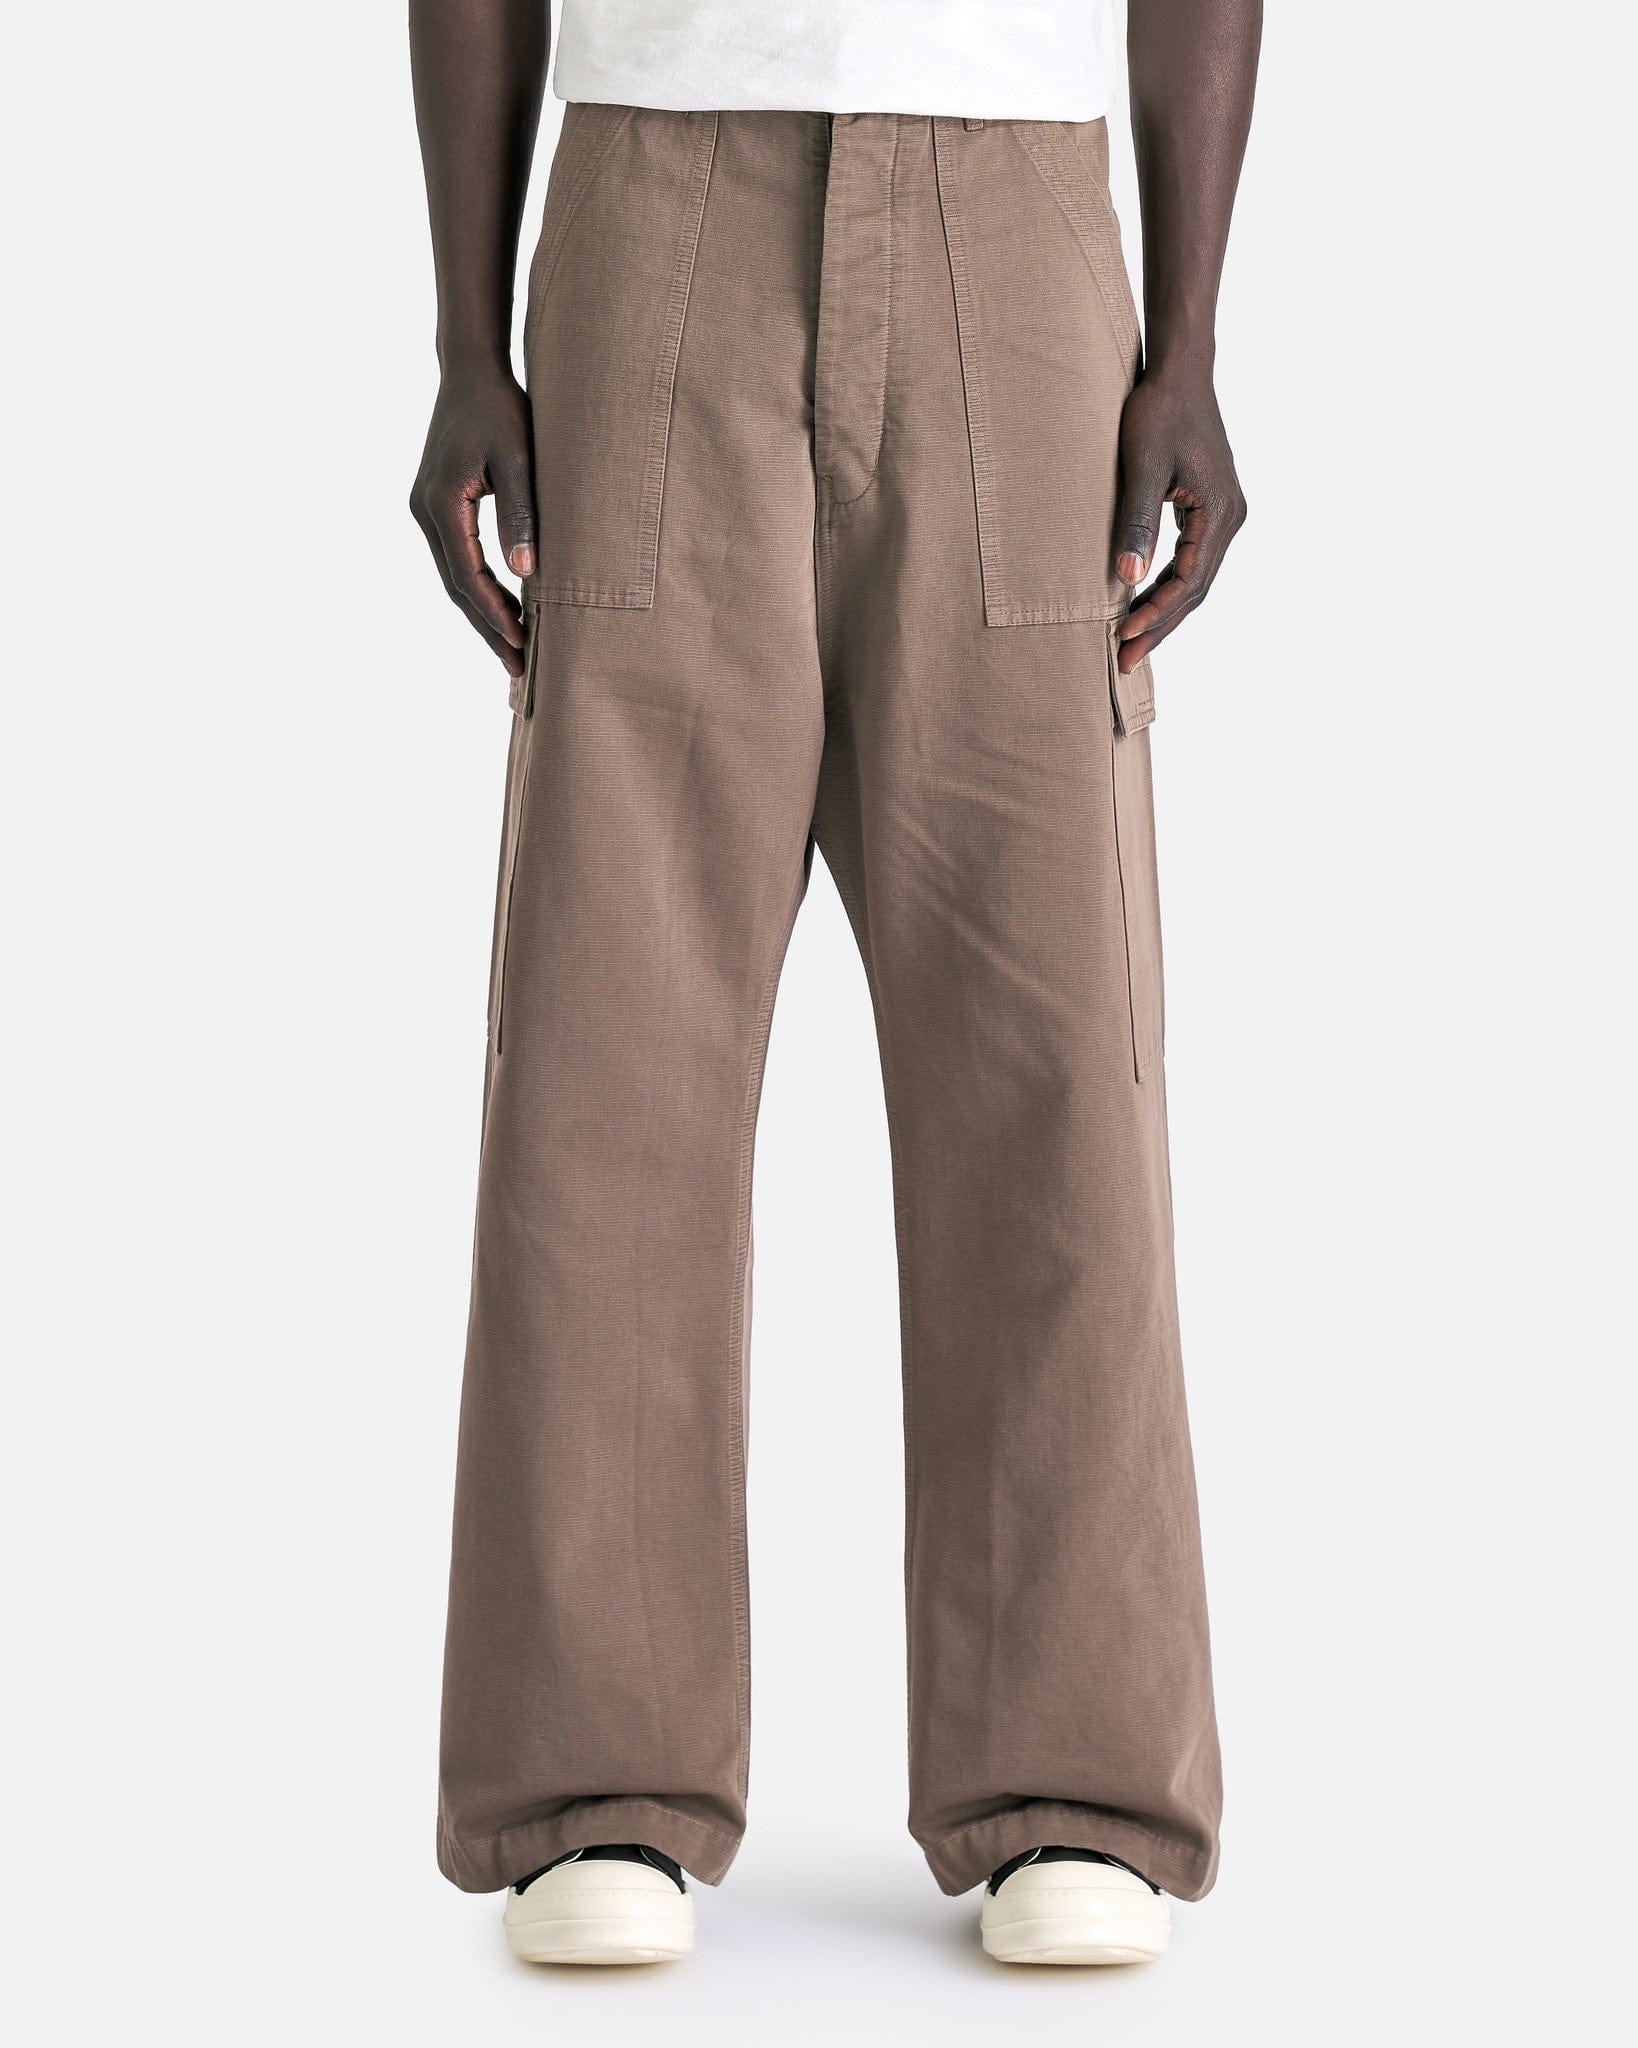 Rick Owens DRKSHDW Men's Pants Cargo Trousers in Dust